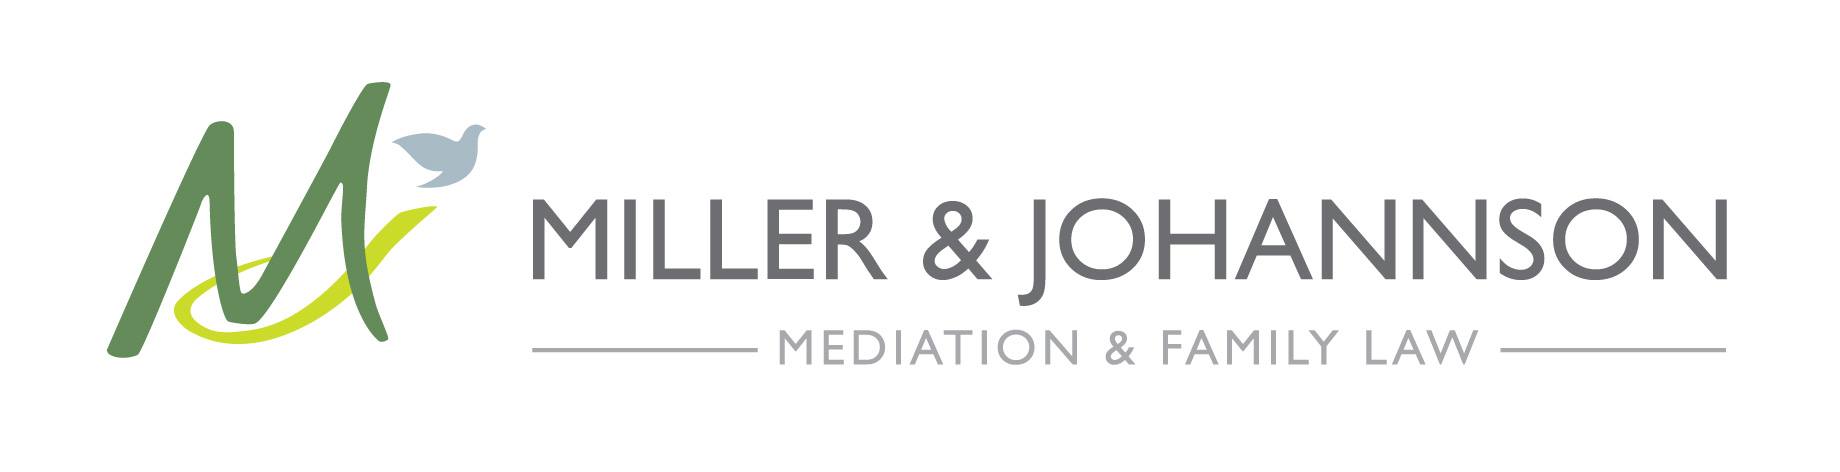 Miller & Johannson Mediati